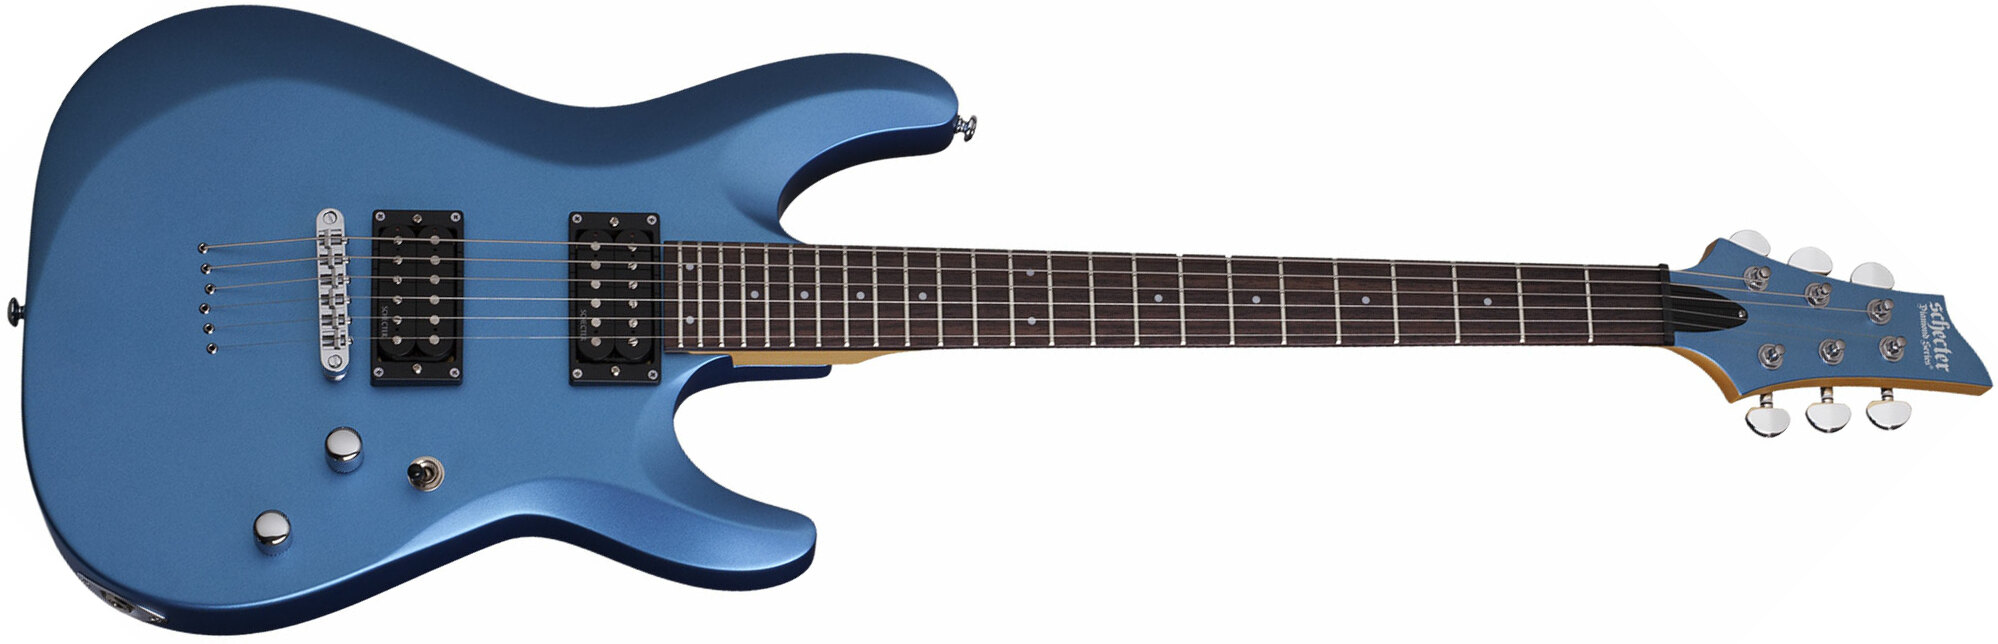 Schecter C-6 Deluxe 2h Ht Rw - Satin Metallic Light Blue - Guitare Électrique Double Cut - Main picture